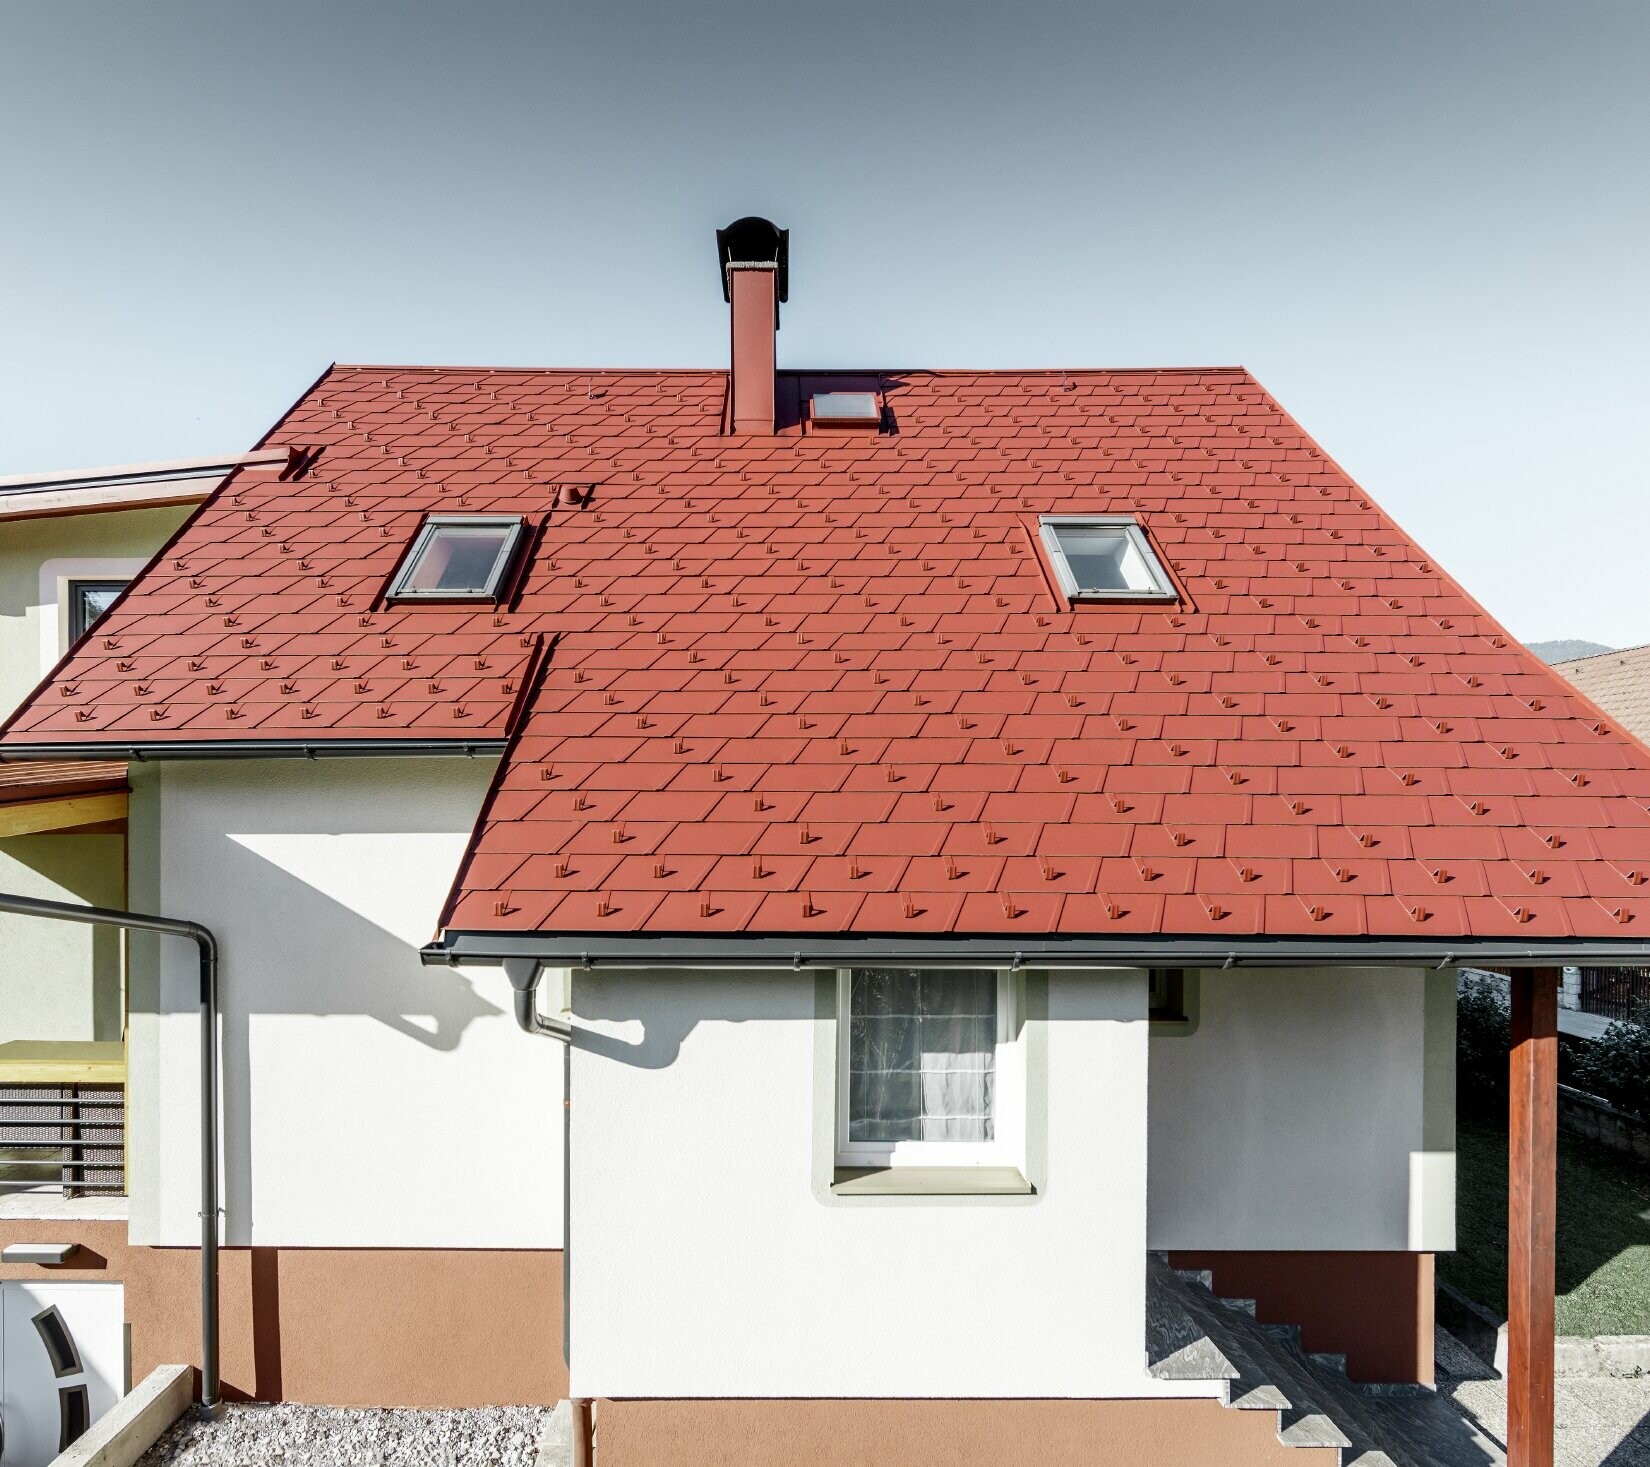 Sanirana obiteljska kuća s novim krovom od krovne šindre, položena je šindra DS.19 u boji oksid crvena.